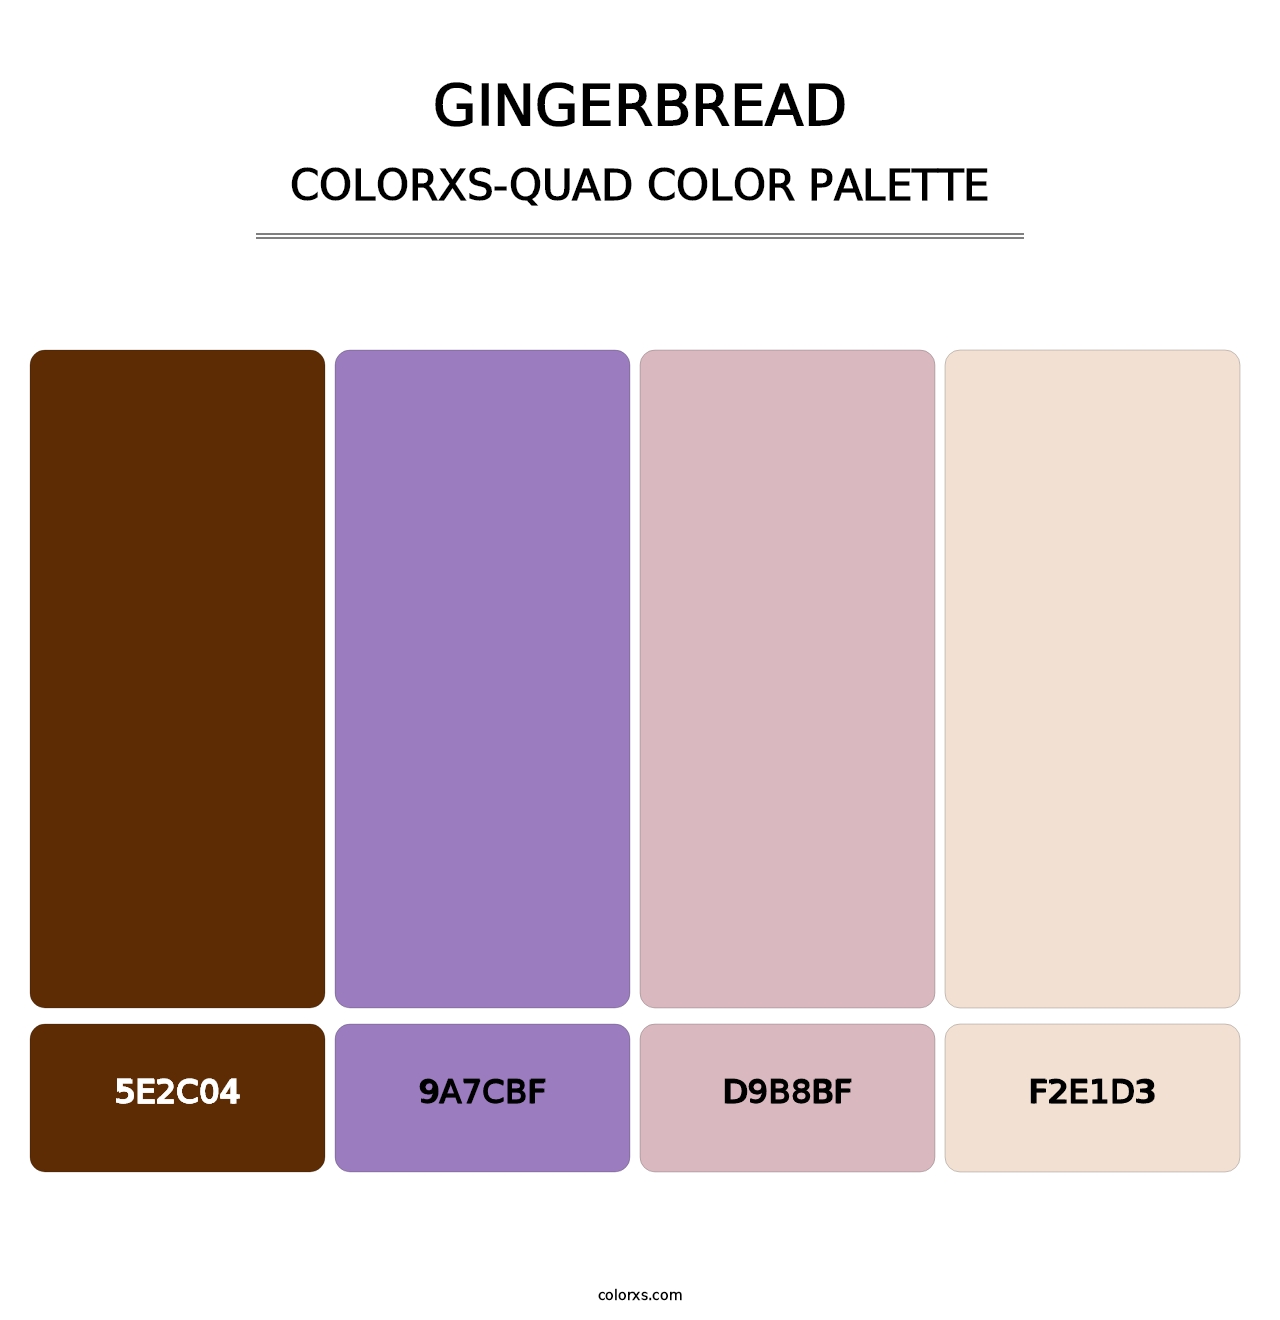 Gingerbread - Colorxs Quad Palette